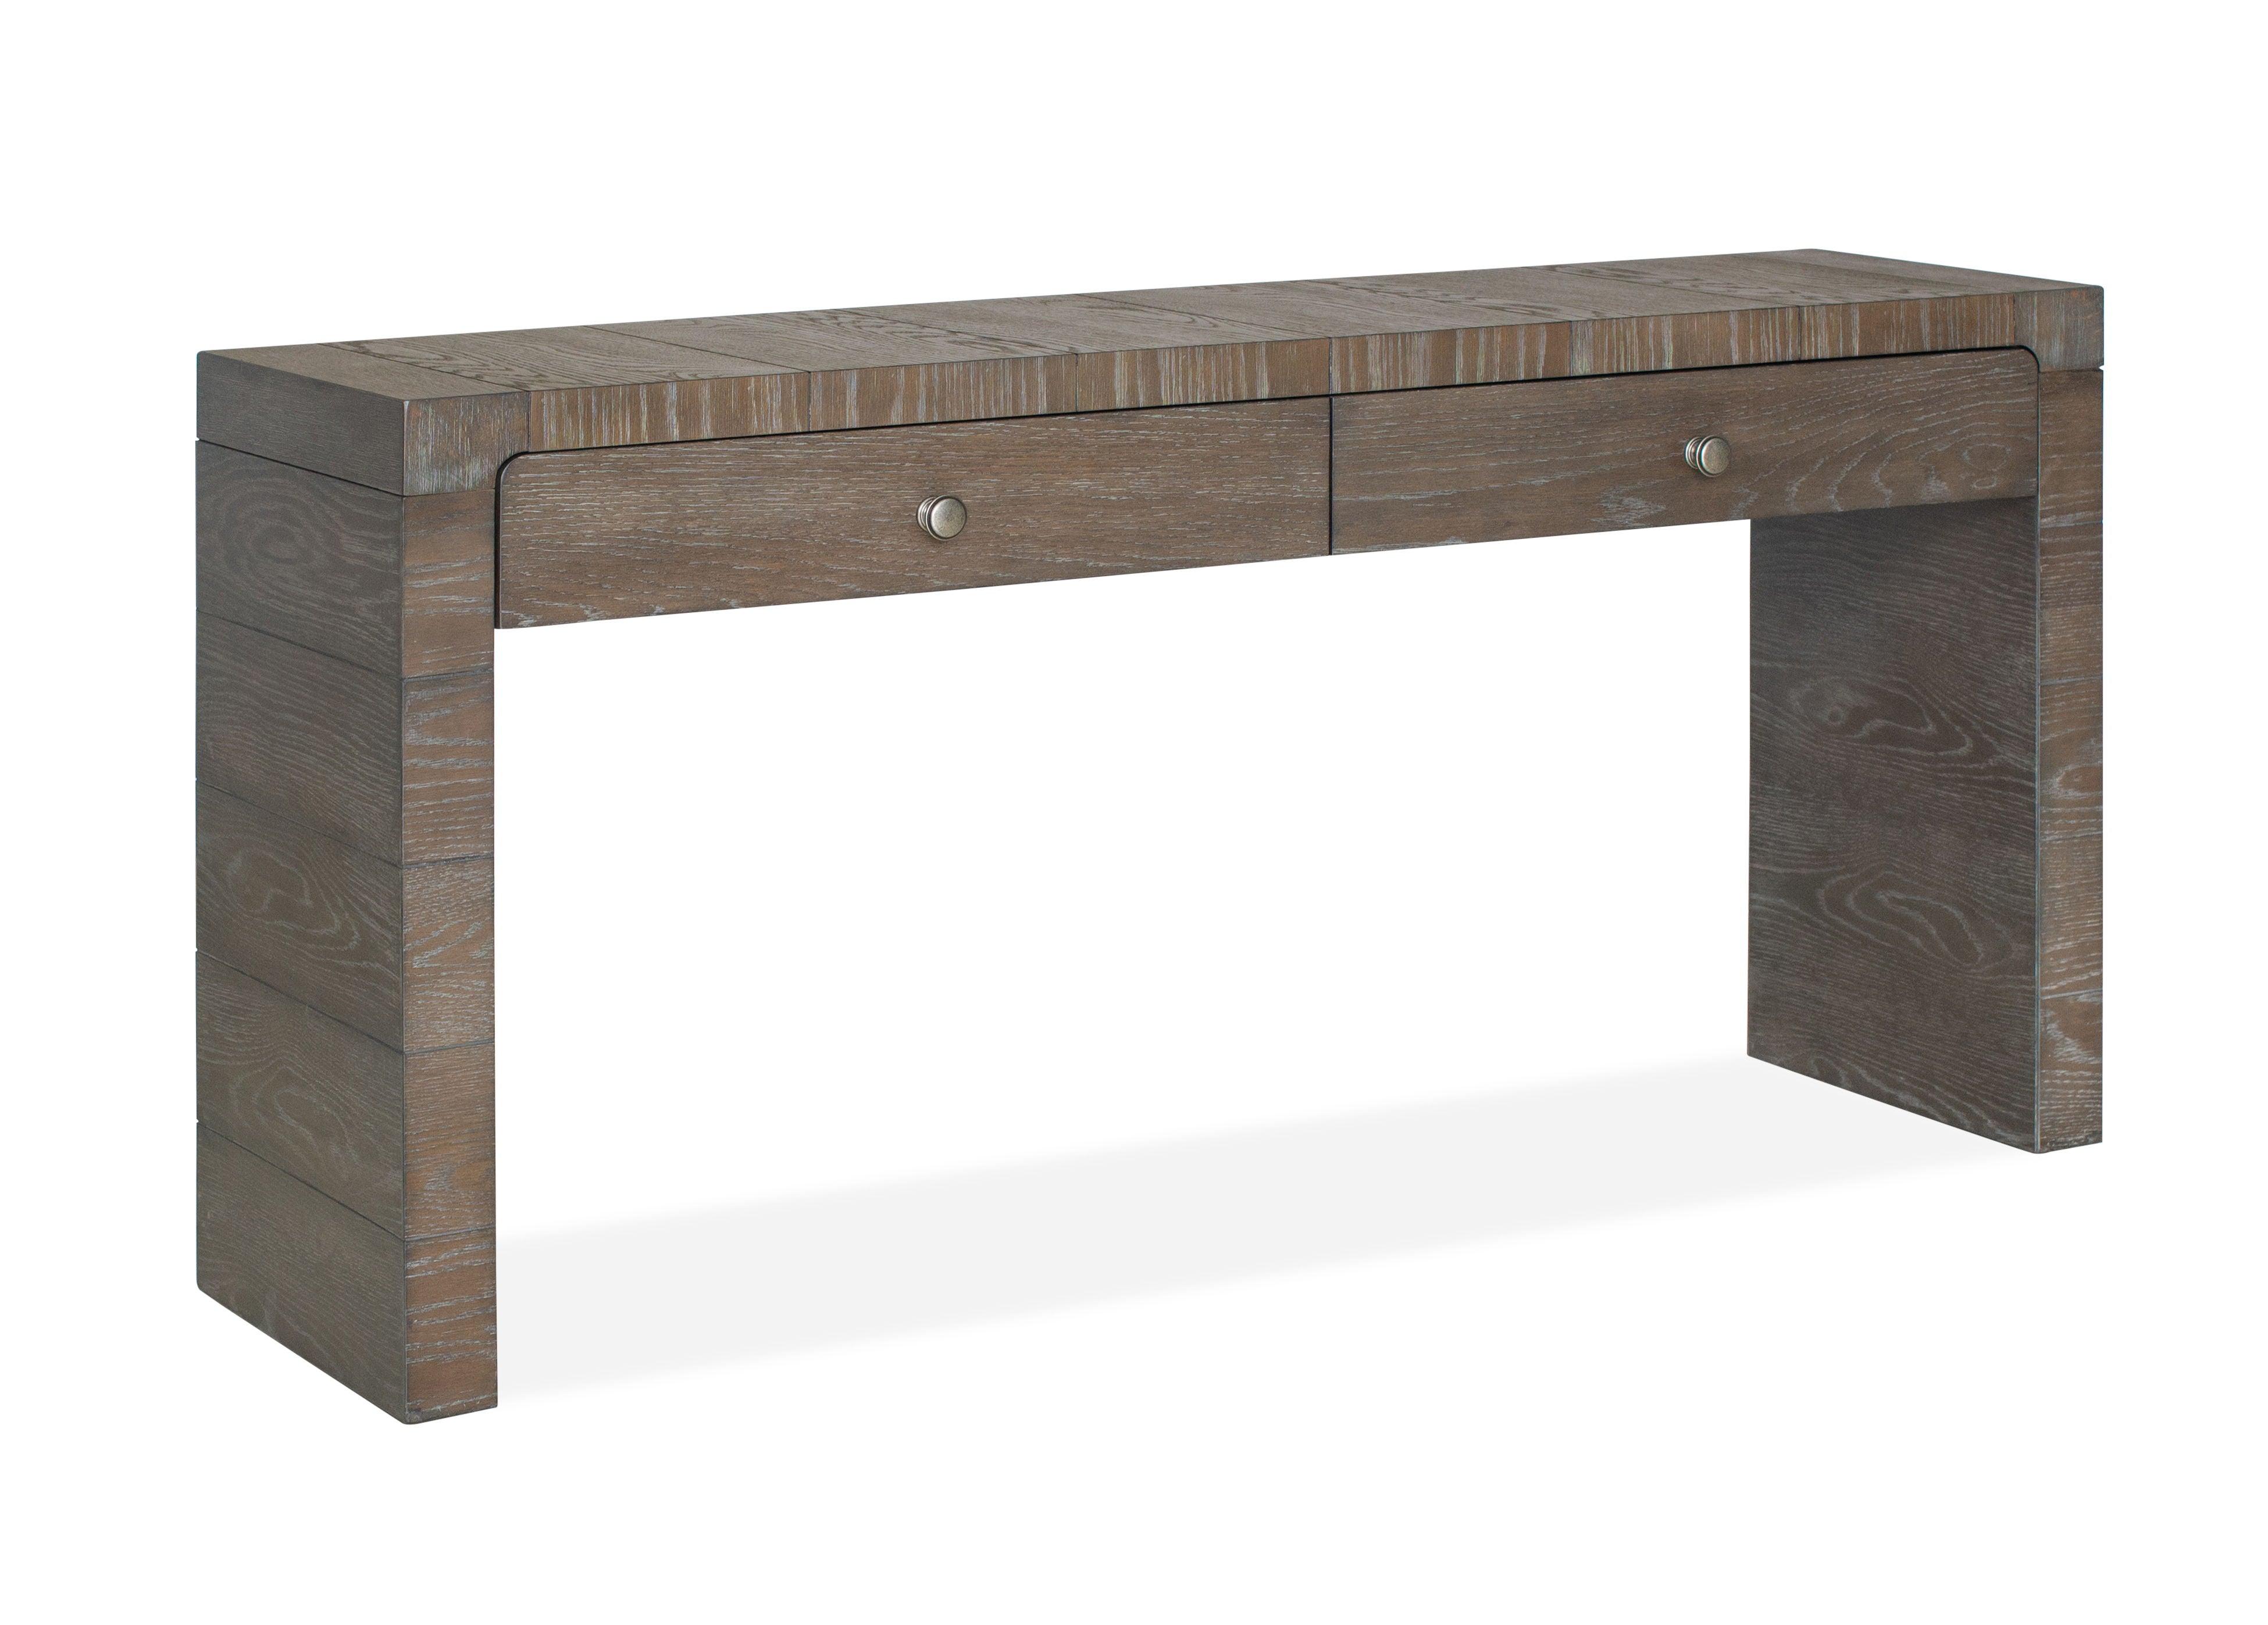 Magnussen Furniture - LeLand - Rectangular Sofa Table - Espresso - 5th Avenue Furniture